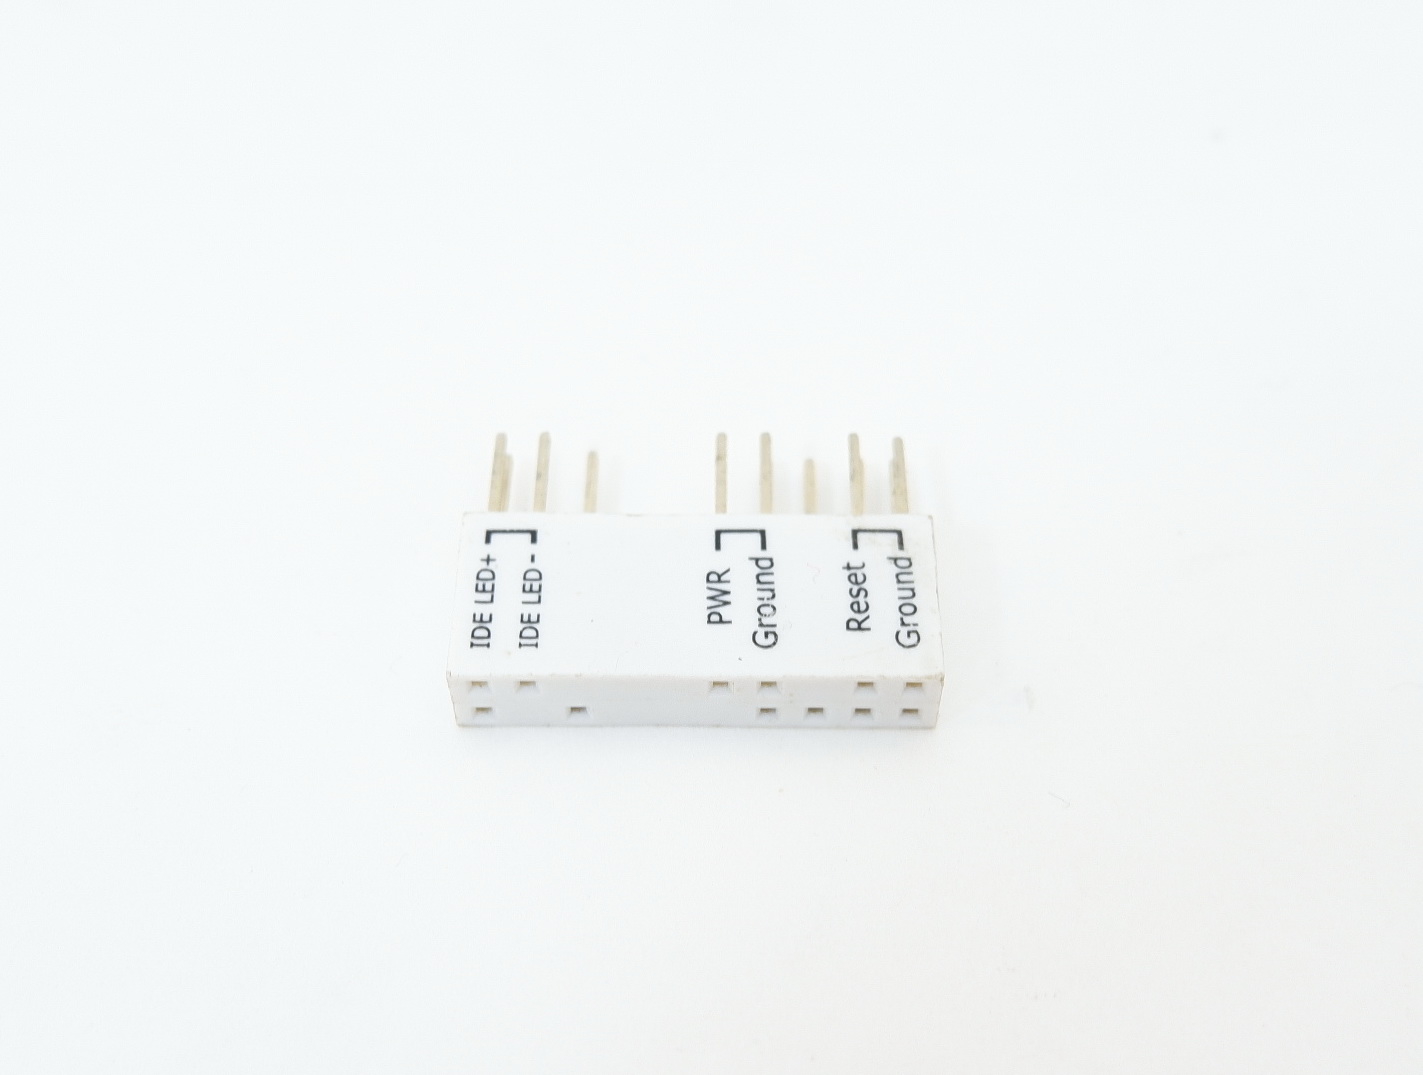 Asus q connector, ASUS Q-Design Служит для быстрого подключения кнопок фронтальной панели корпуса ( кнопа перезагрузки, кнопка питания, индикаторы питания и HDD, спикер). Все подключаем в коннектор, а потом к матери. Просто, быстро и удобно.